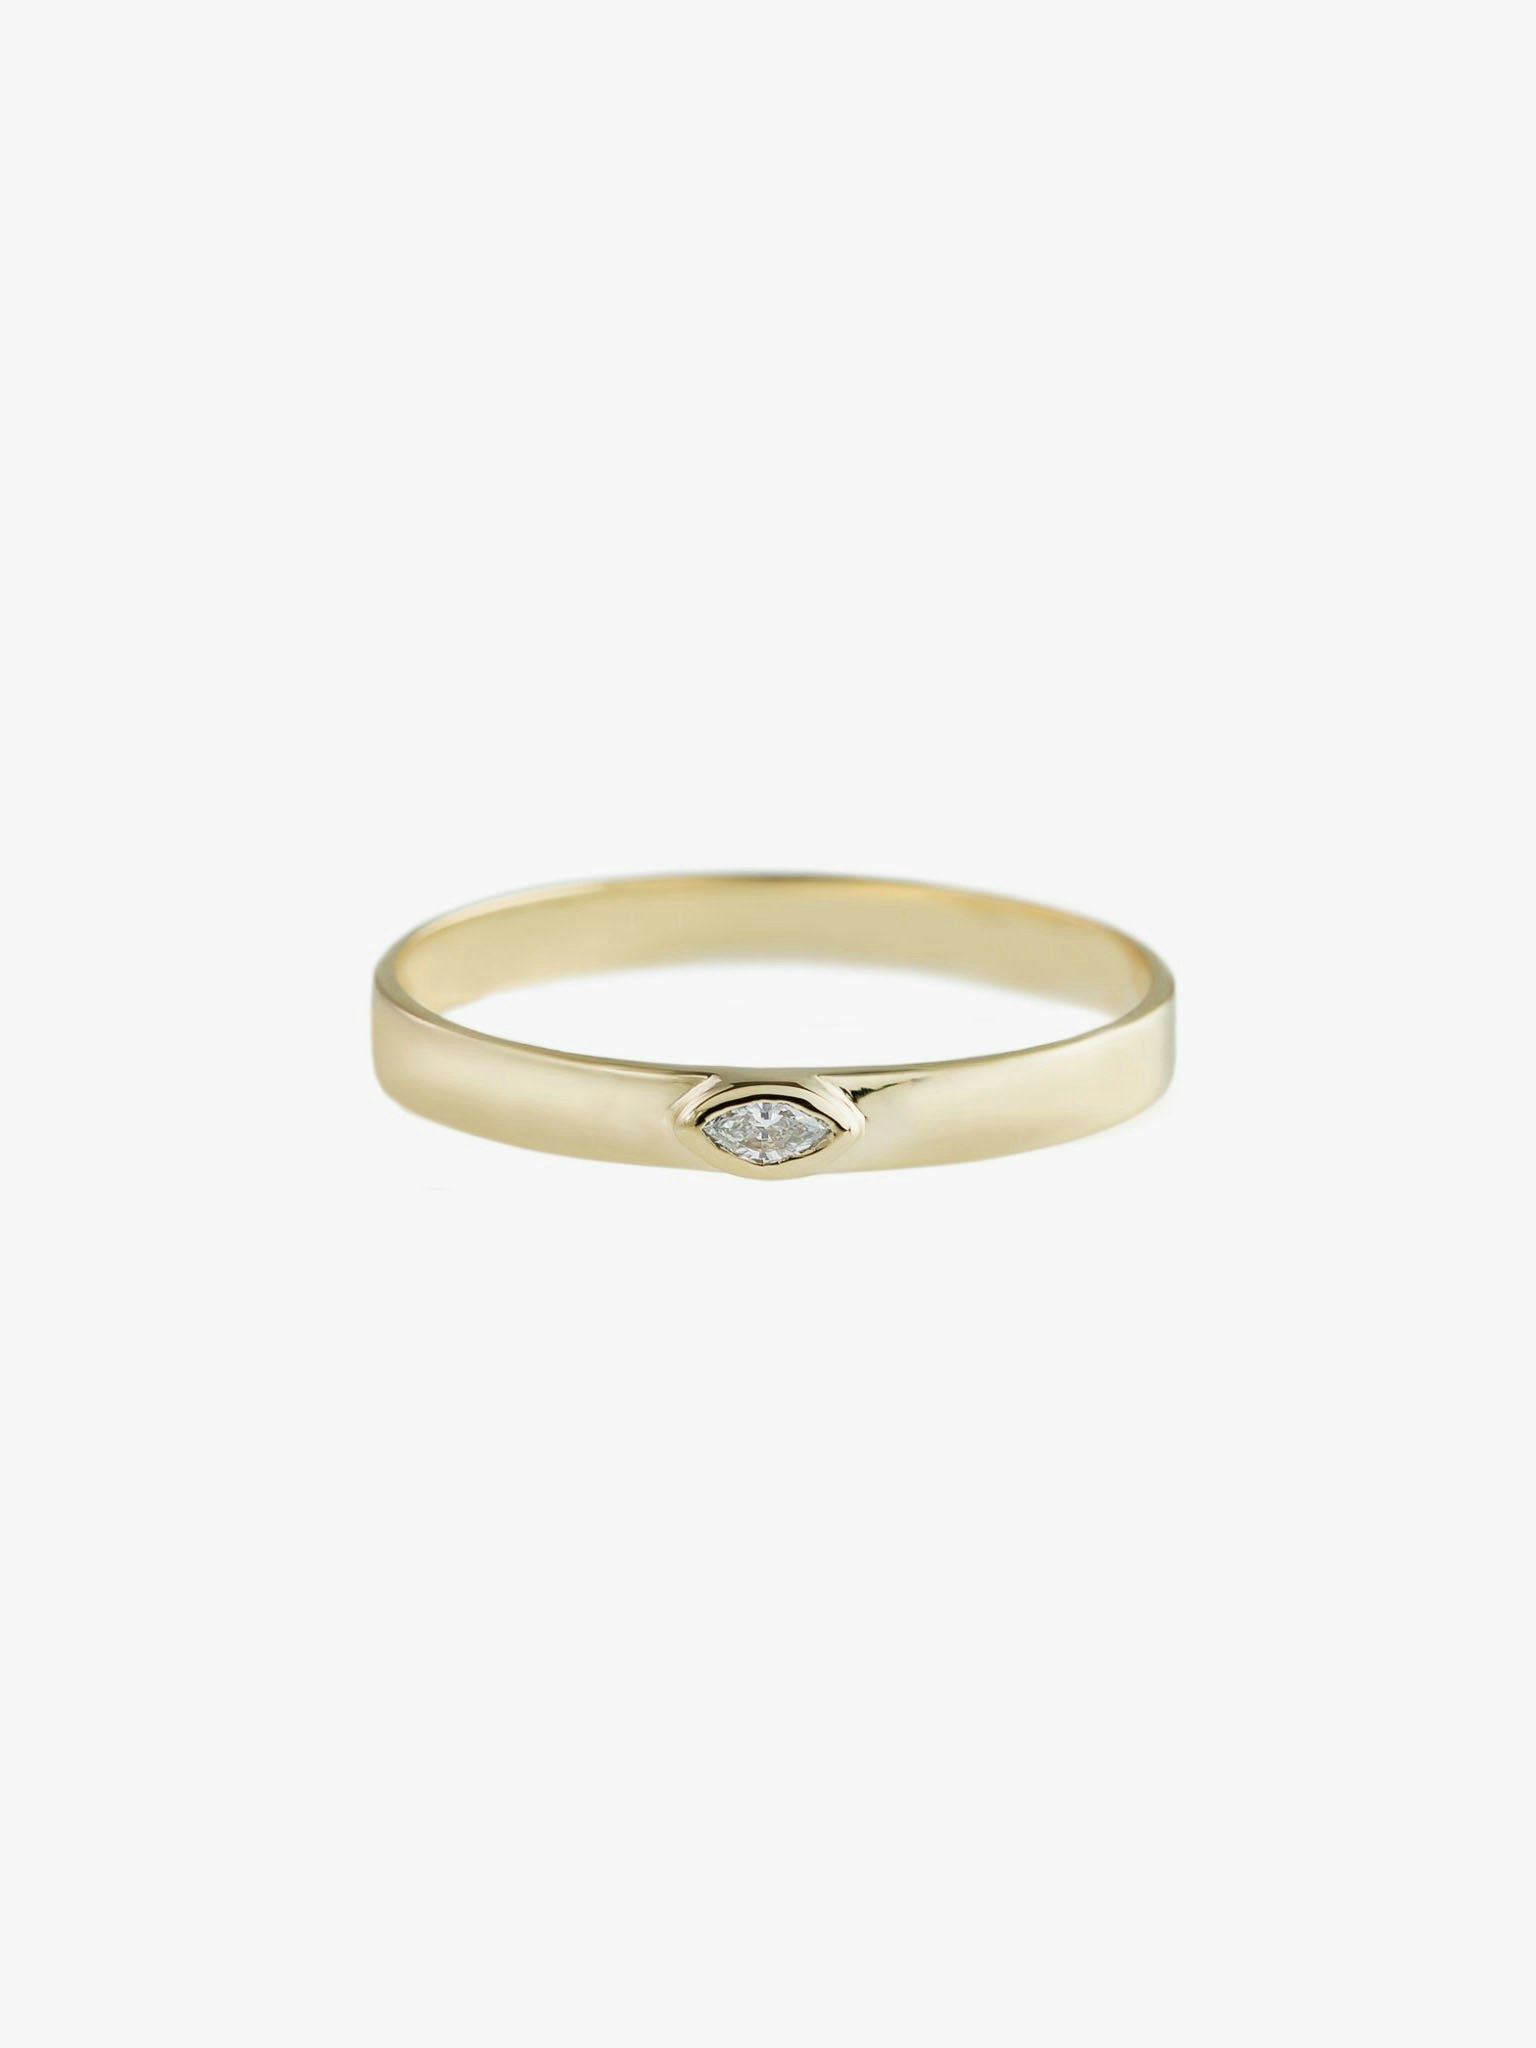 Bezel set marquise diamond ring photo 1